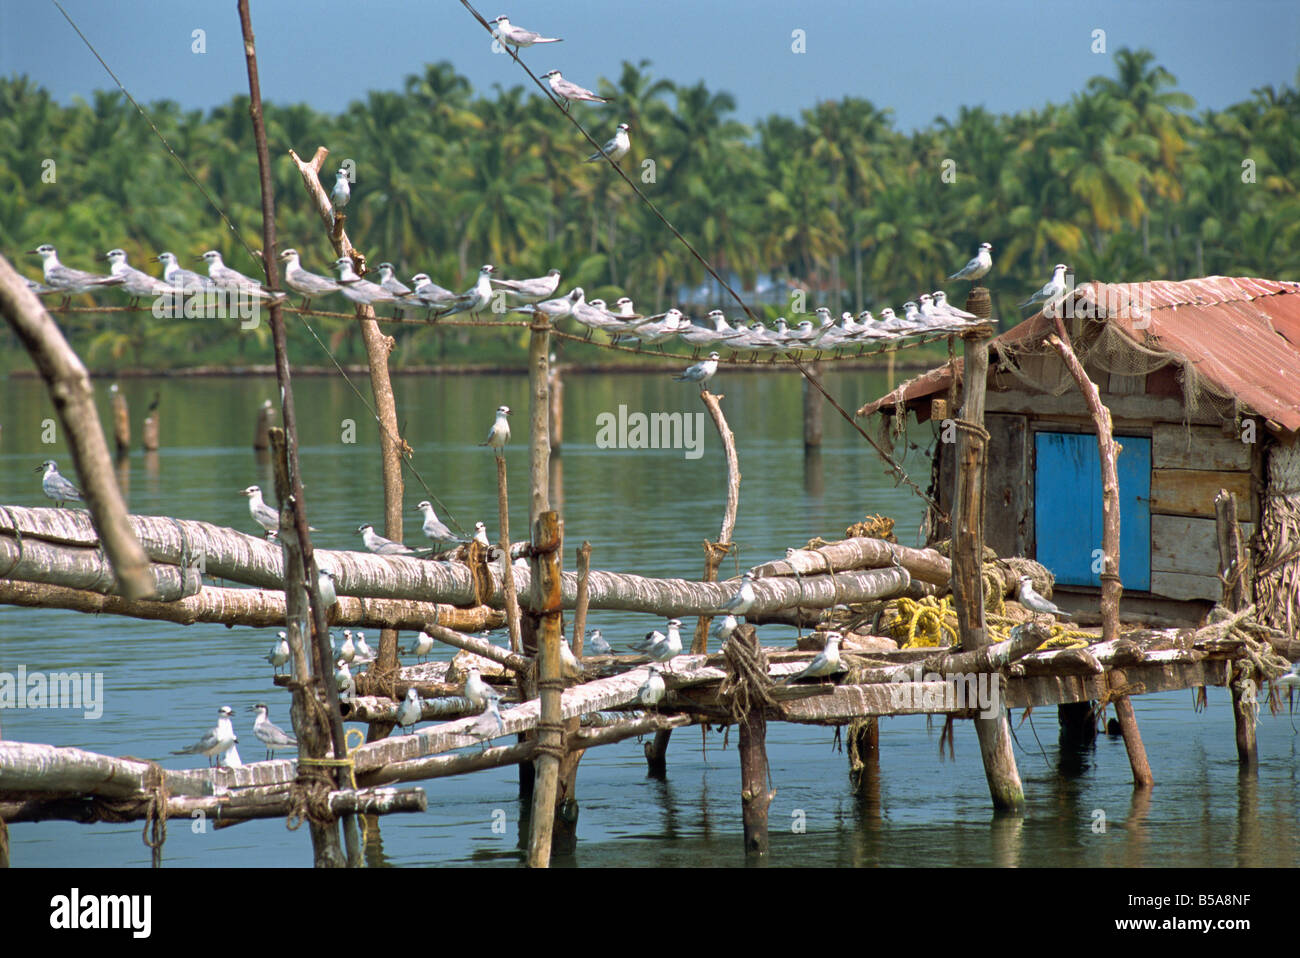 Gli uccelli sul molo in legno, lagune, Kerala, India Foto Stock